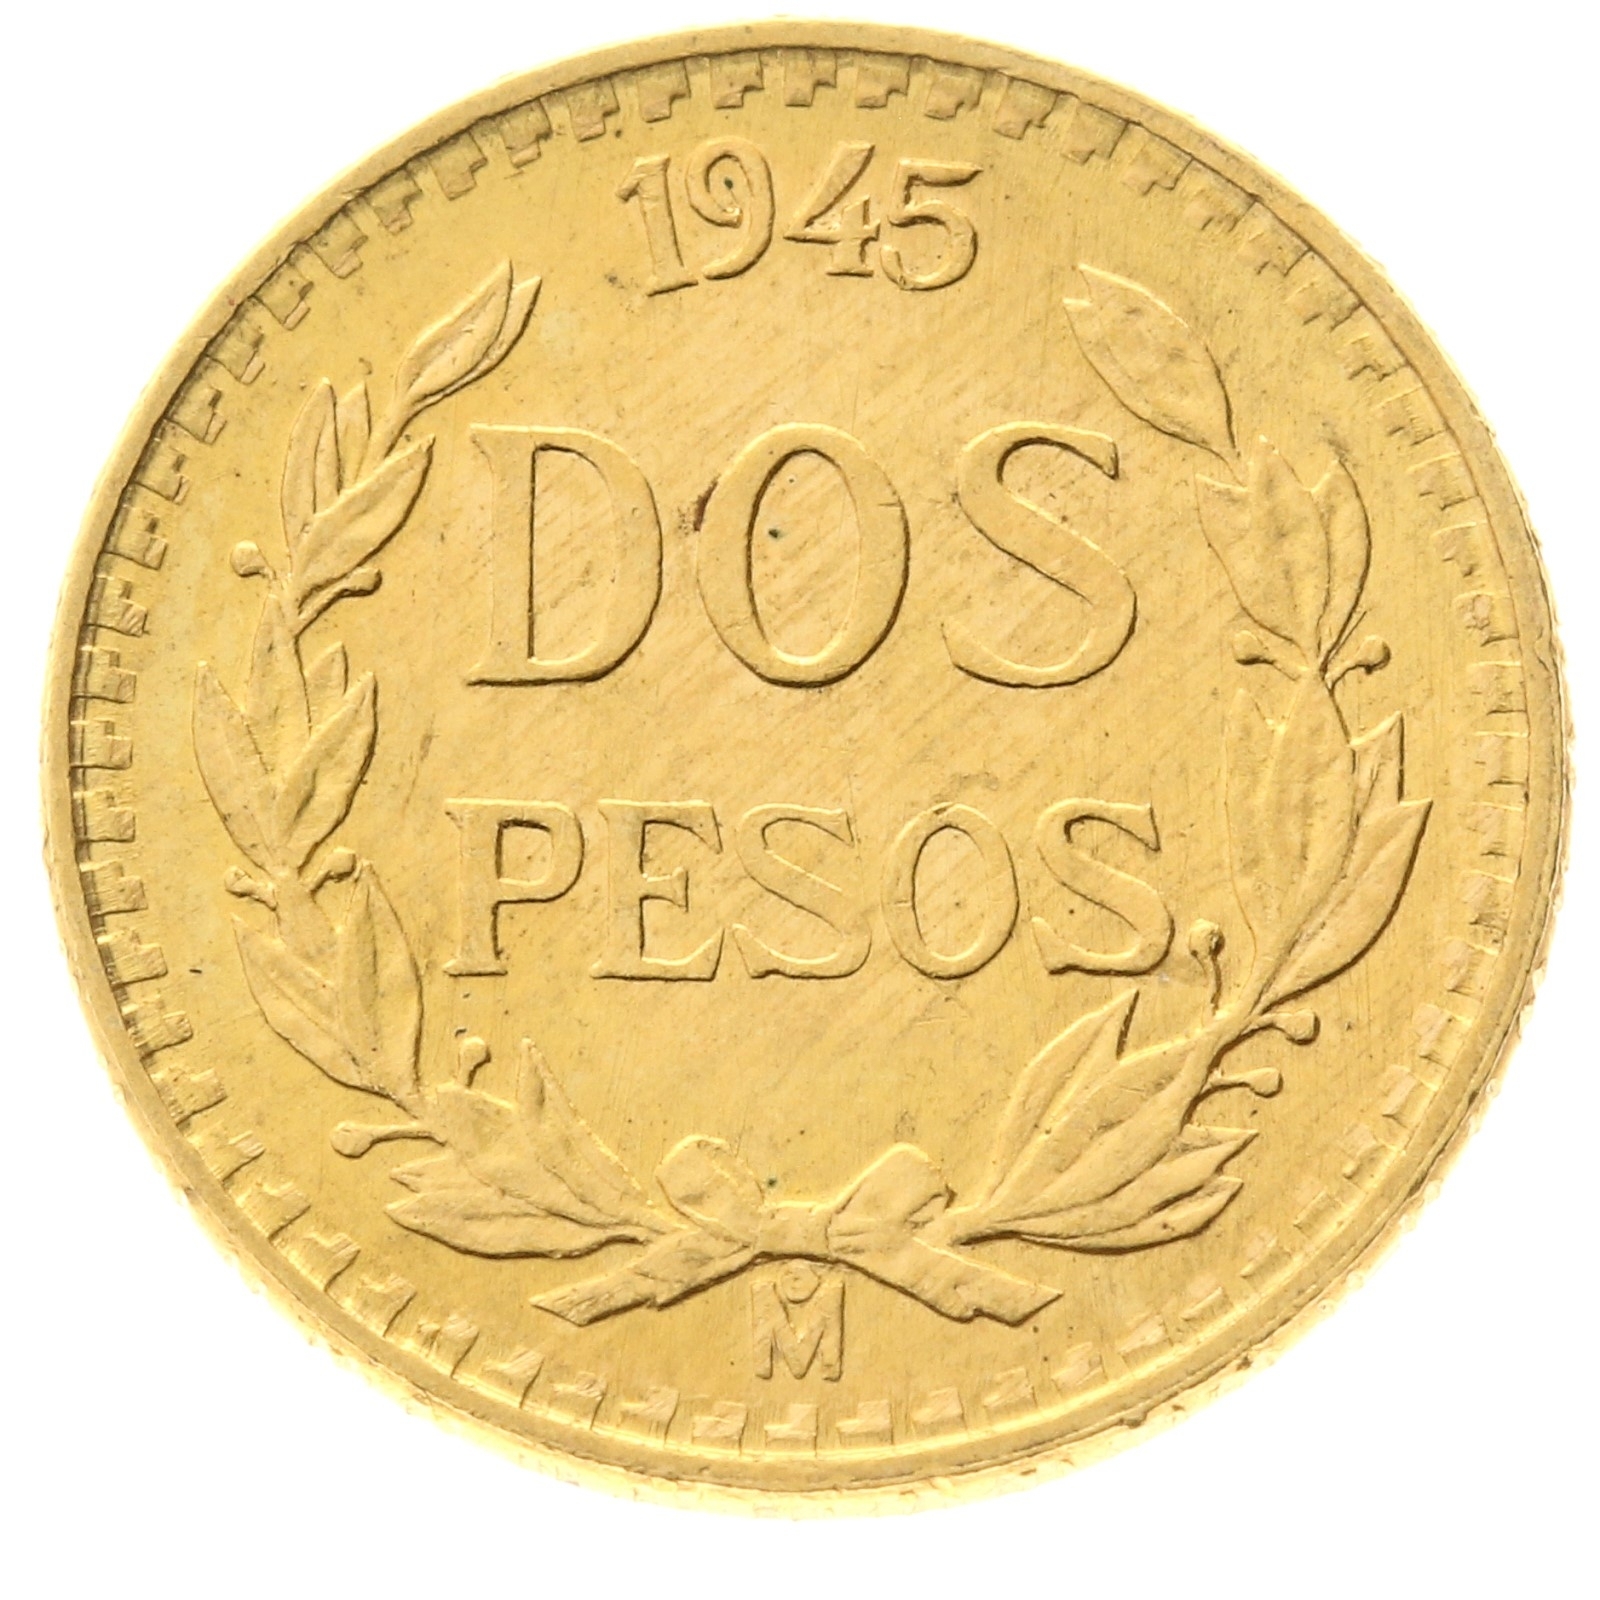 Mexico - 2 pesos - 1945 (Restrike)